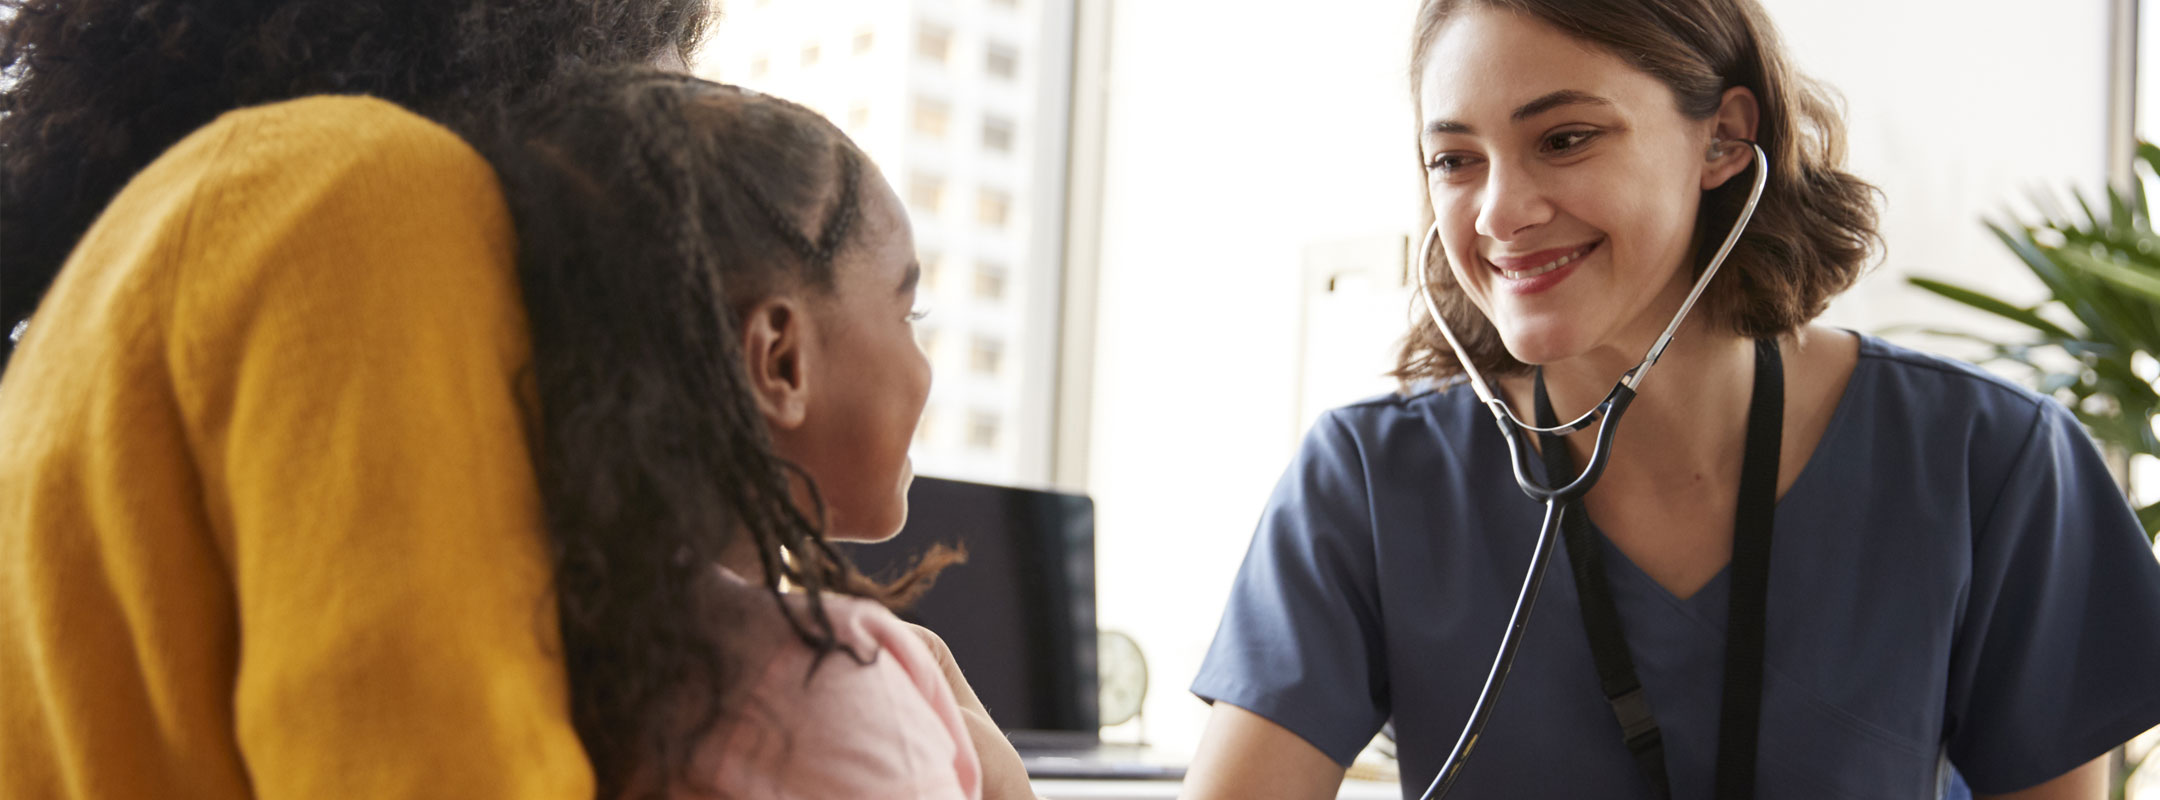 Eine junge Pflegerin hört ein Kind mit einem Stethoskop ab